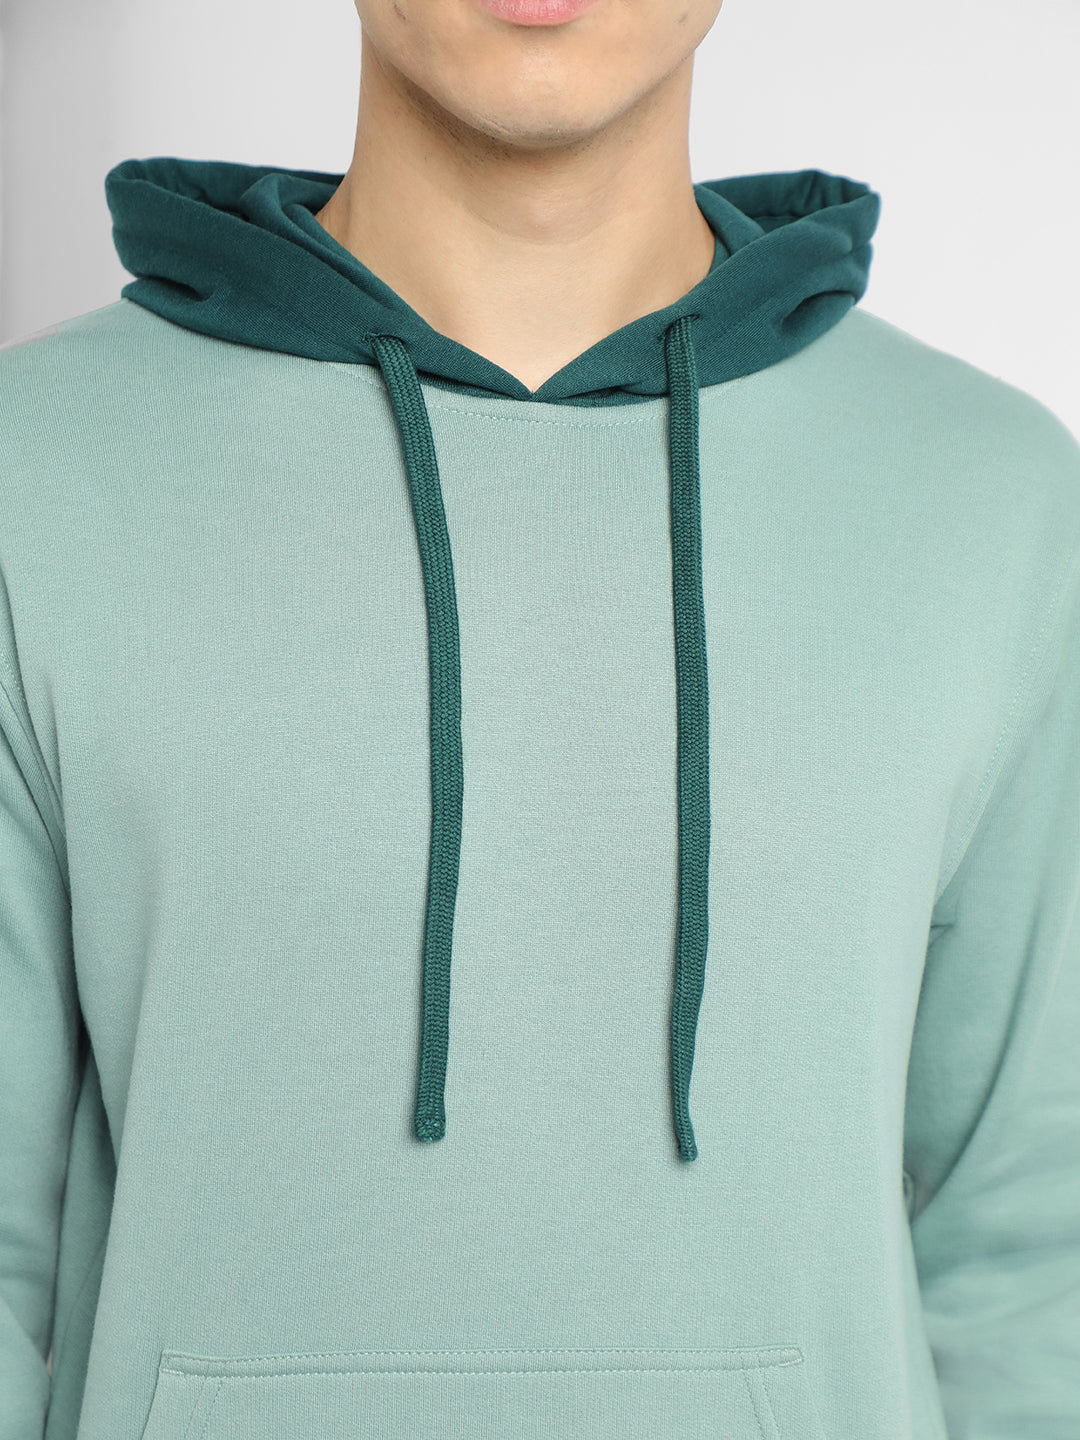 Dennis Lingo Men's Sea Green  Full Sleeves hoodie Sweatshirt